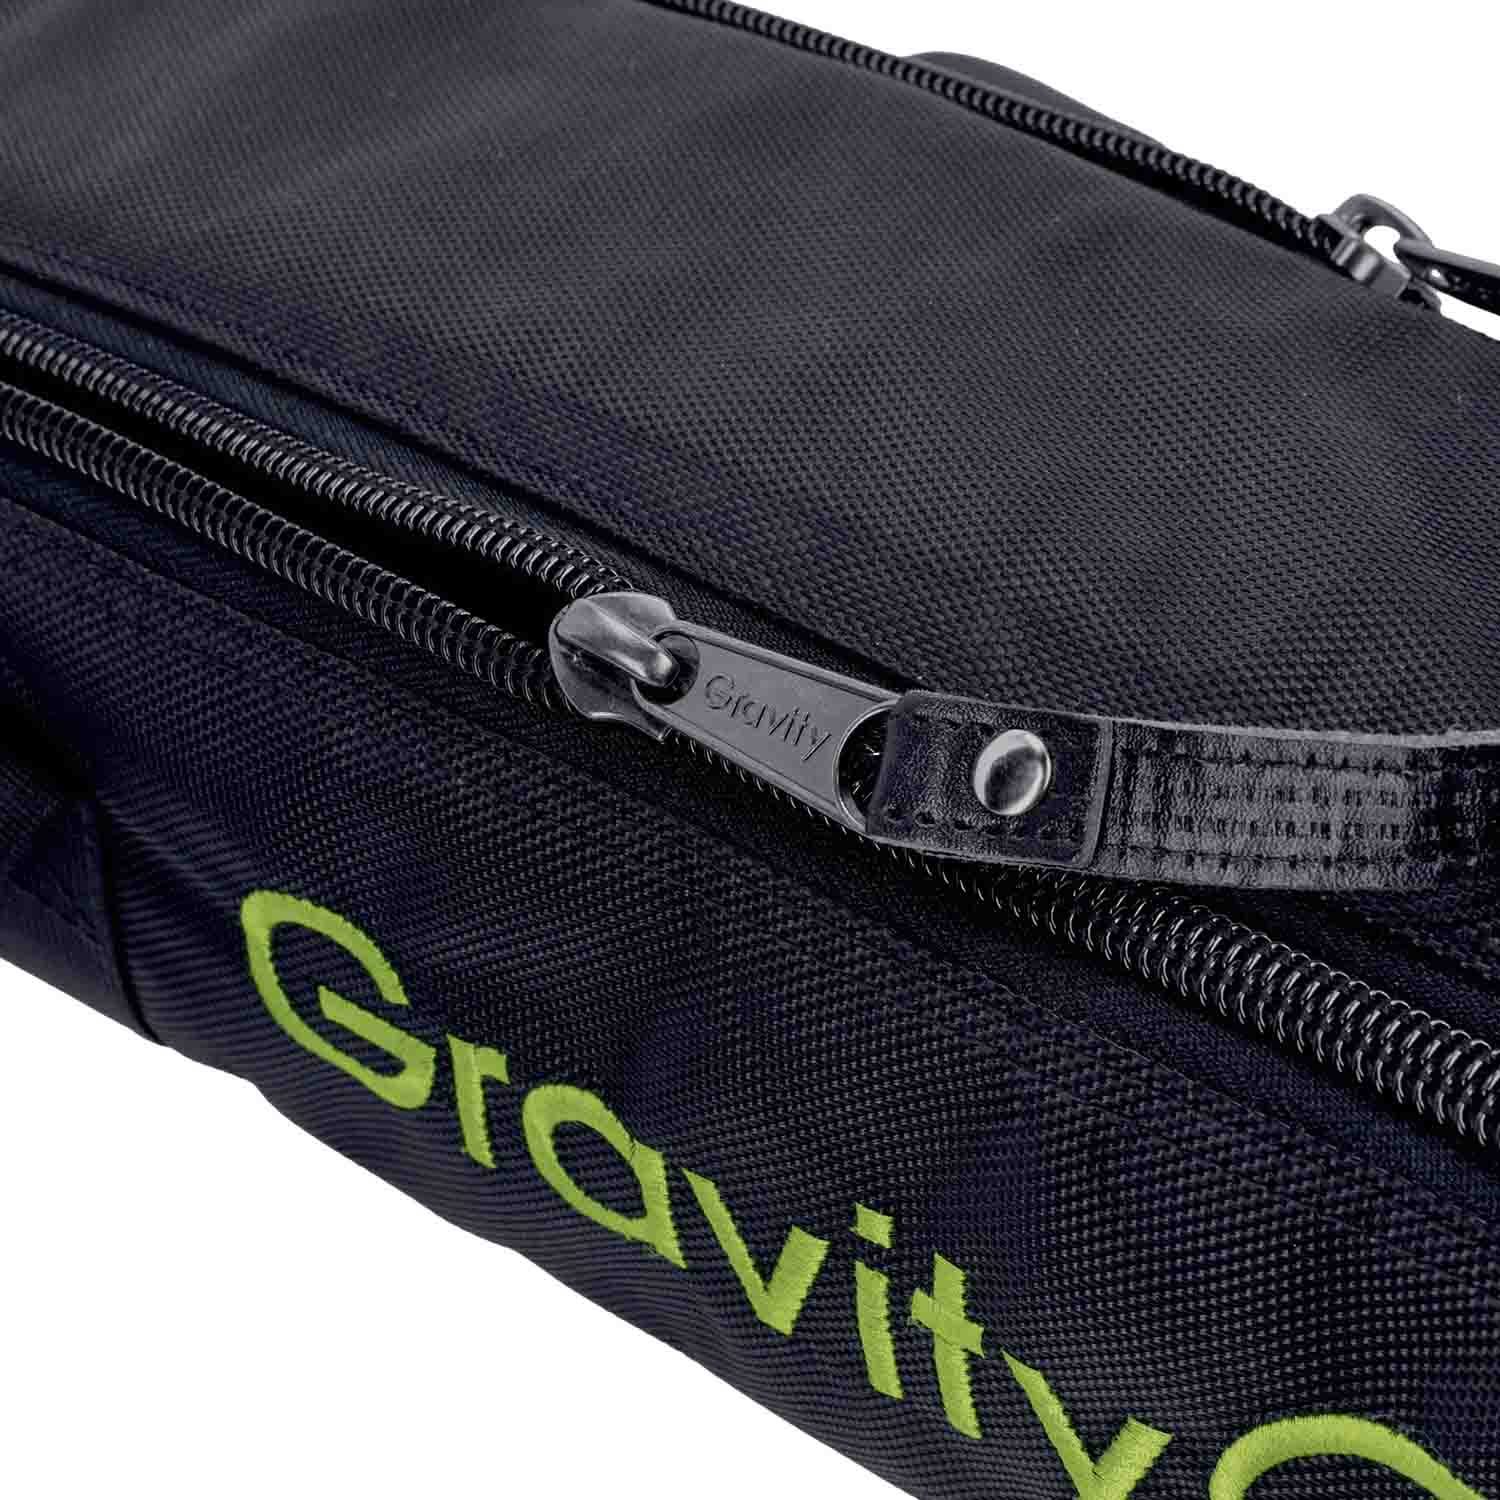 Gravity BG SS 2 T B Transport Bag for Two Traveler Speaker Stands - Hollywood DJ